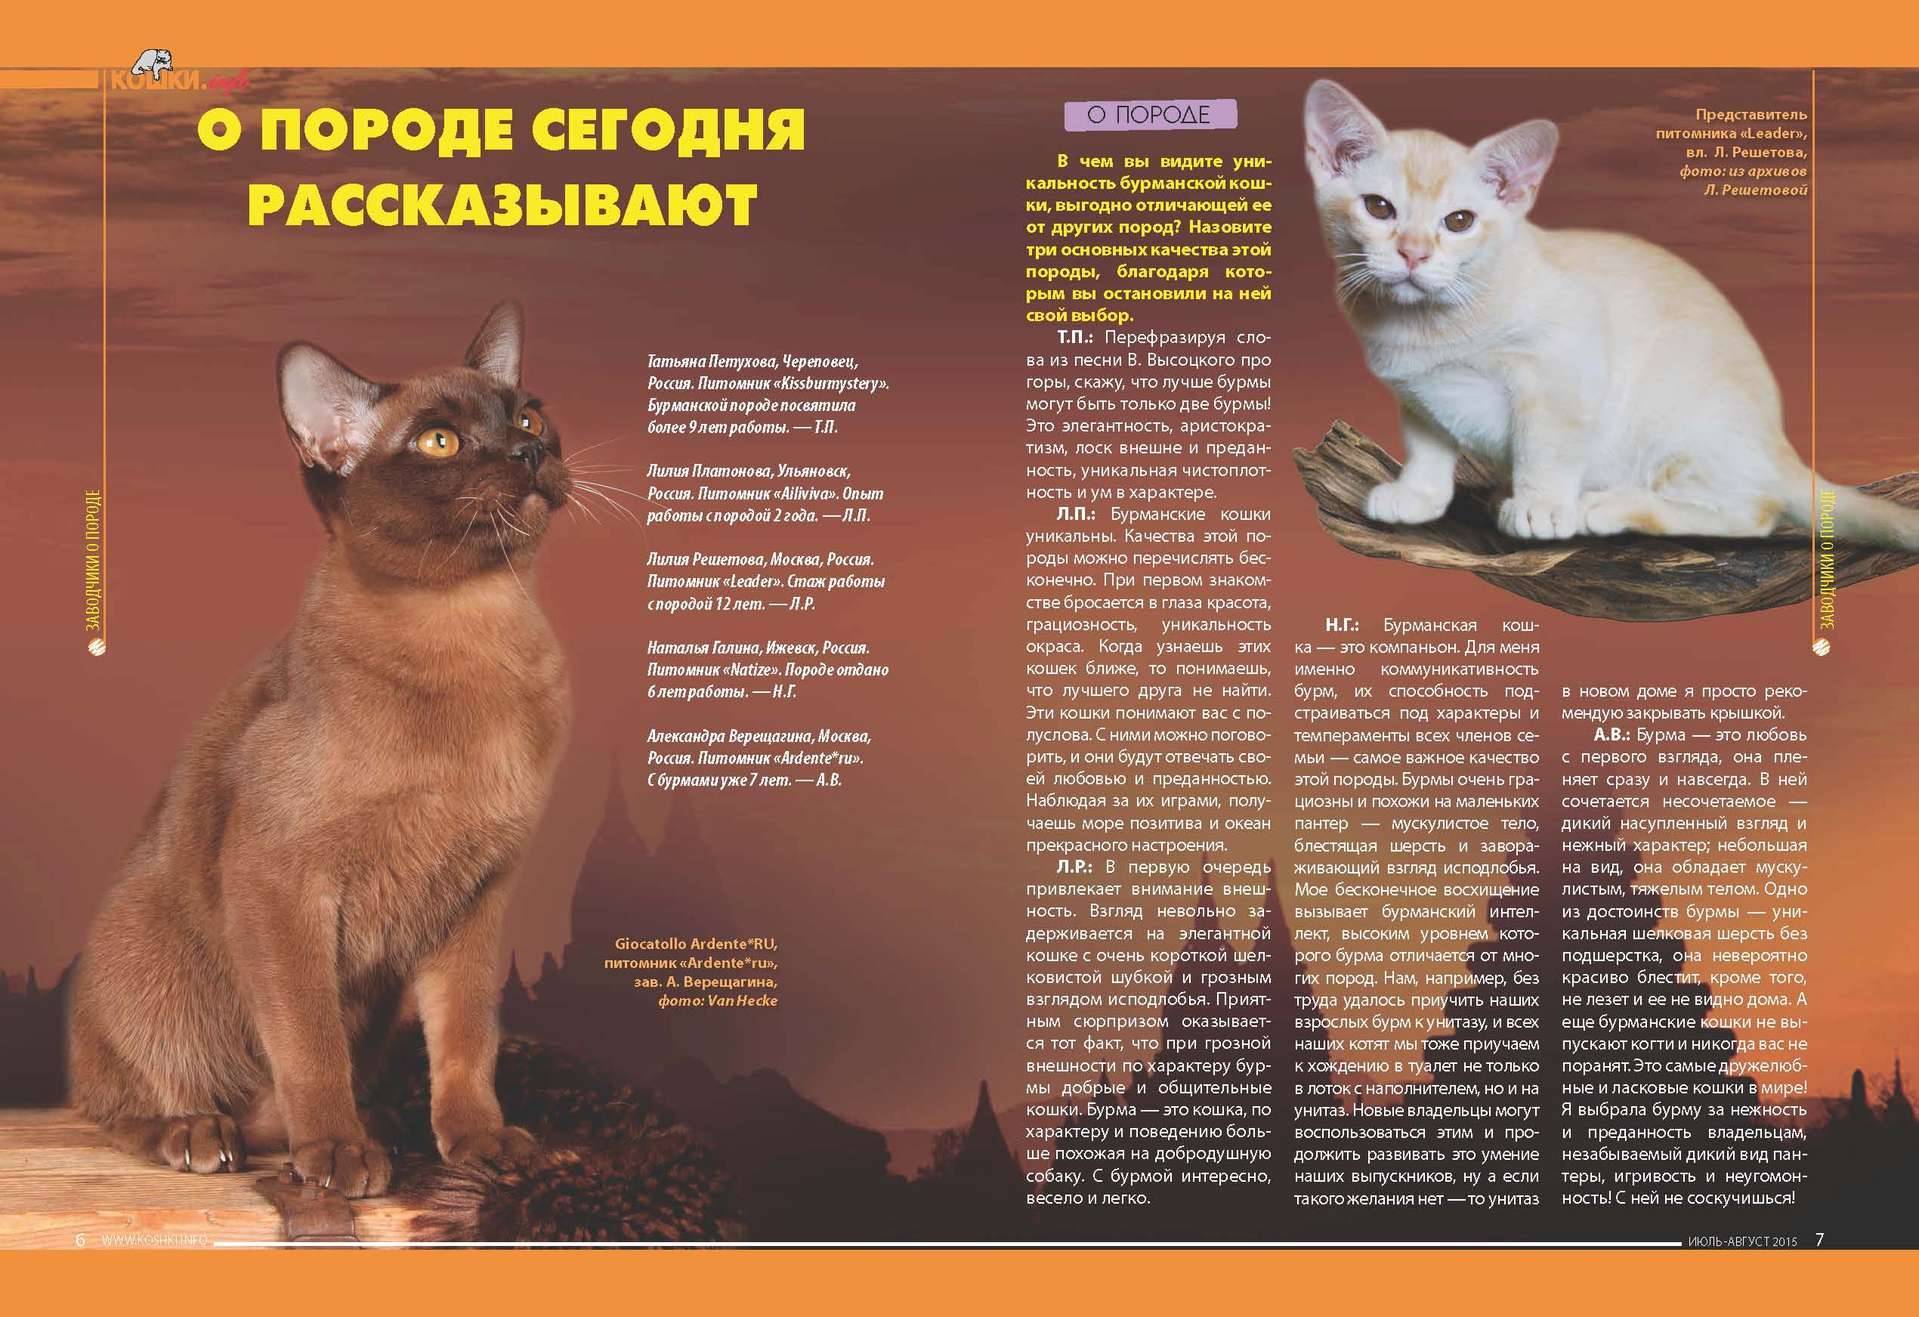 Описание породы бурманской кошки и правила содержания